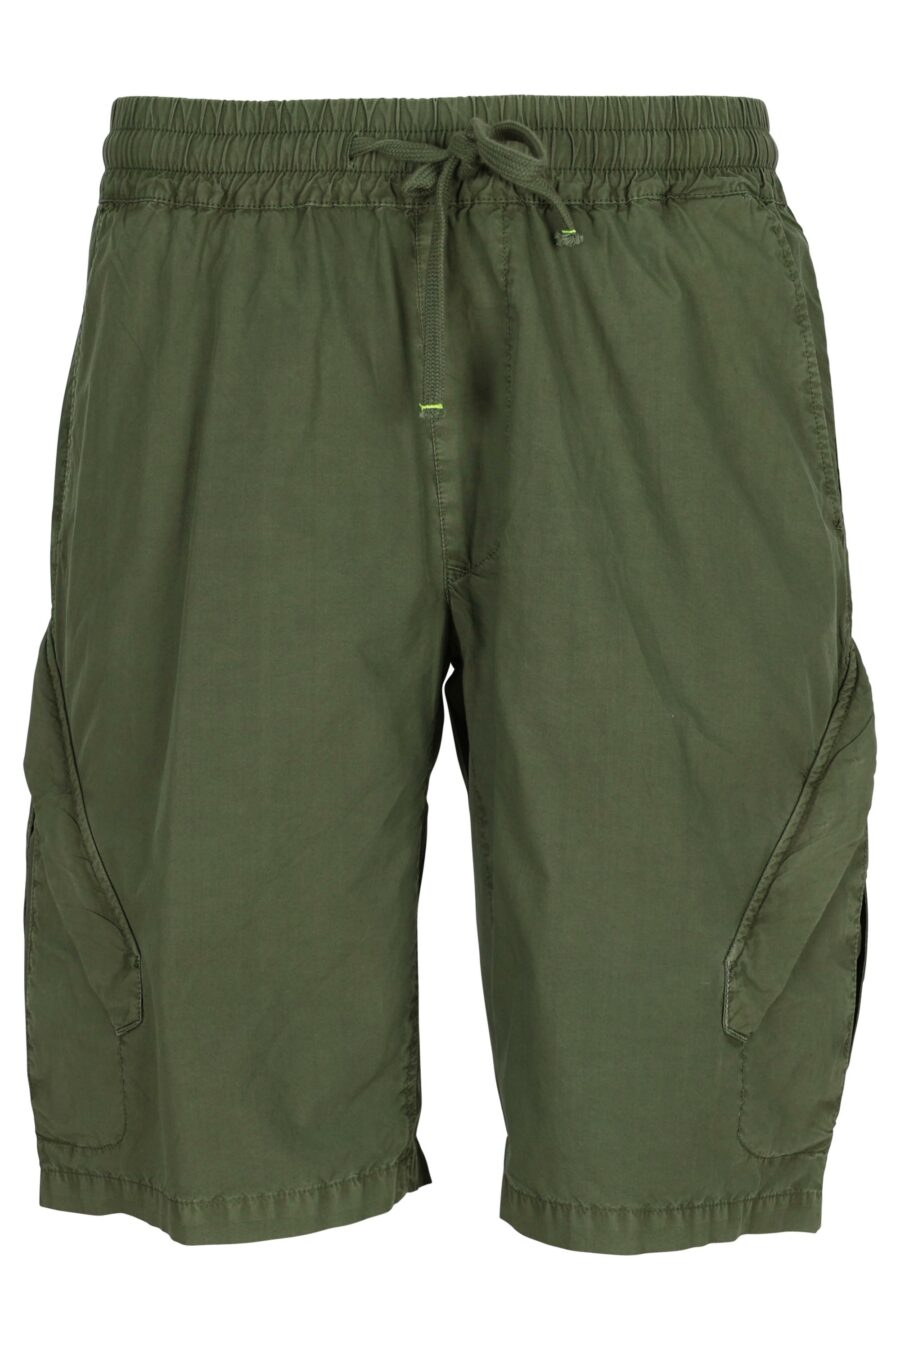 Militärische grüne Shorts mit Feder - 8058610775407